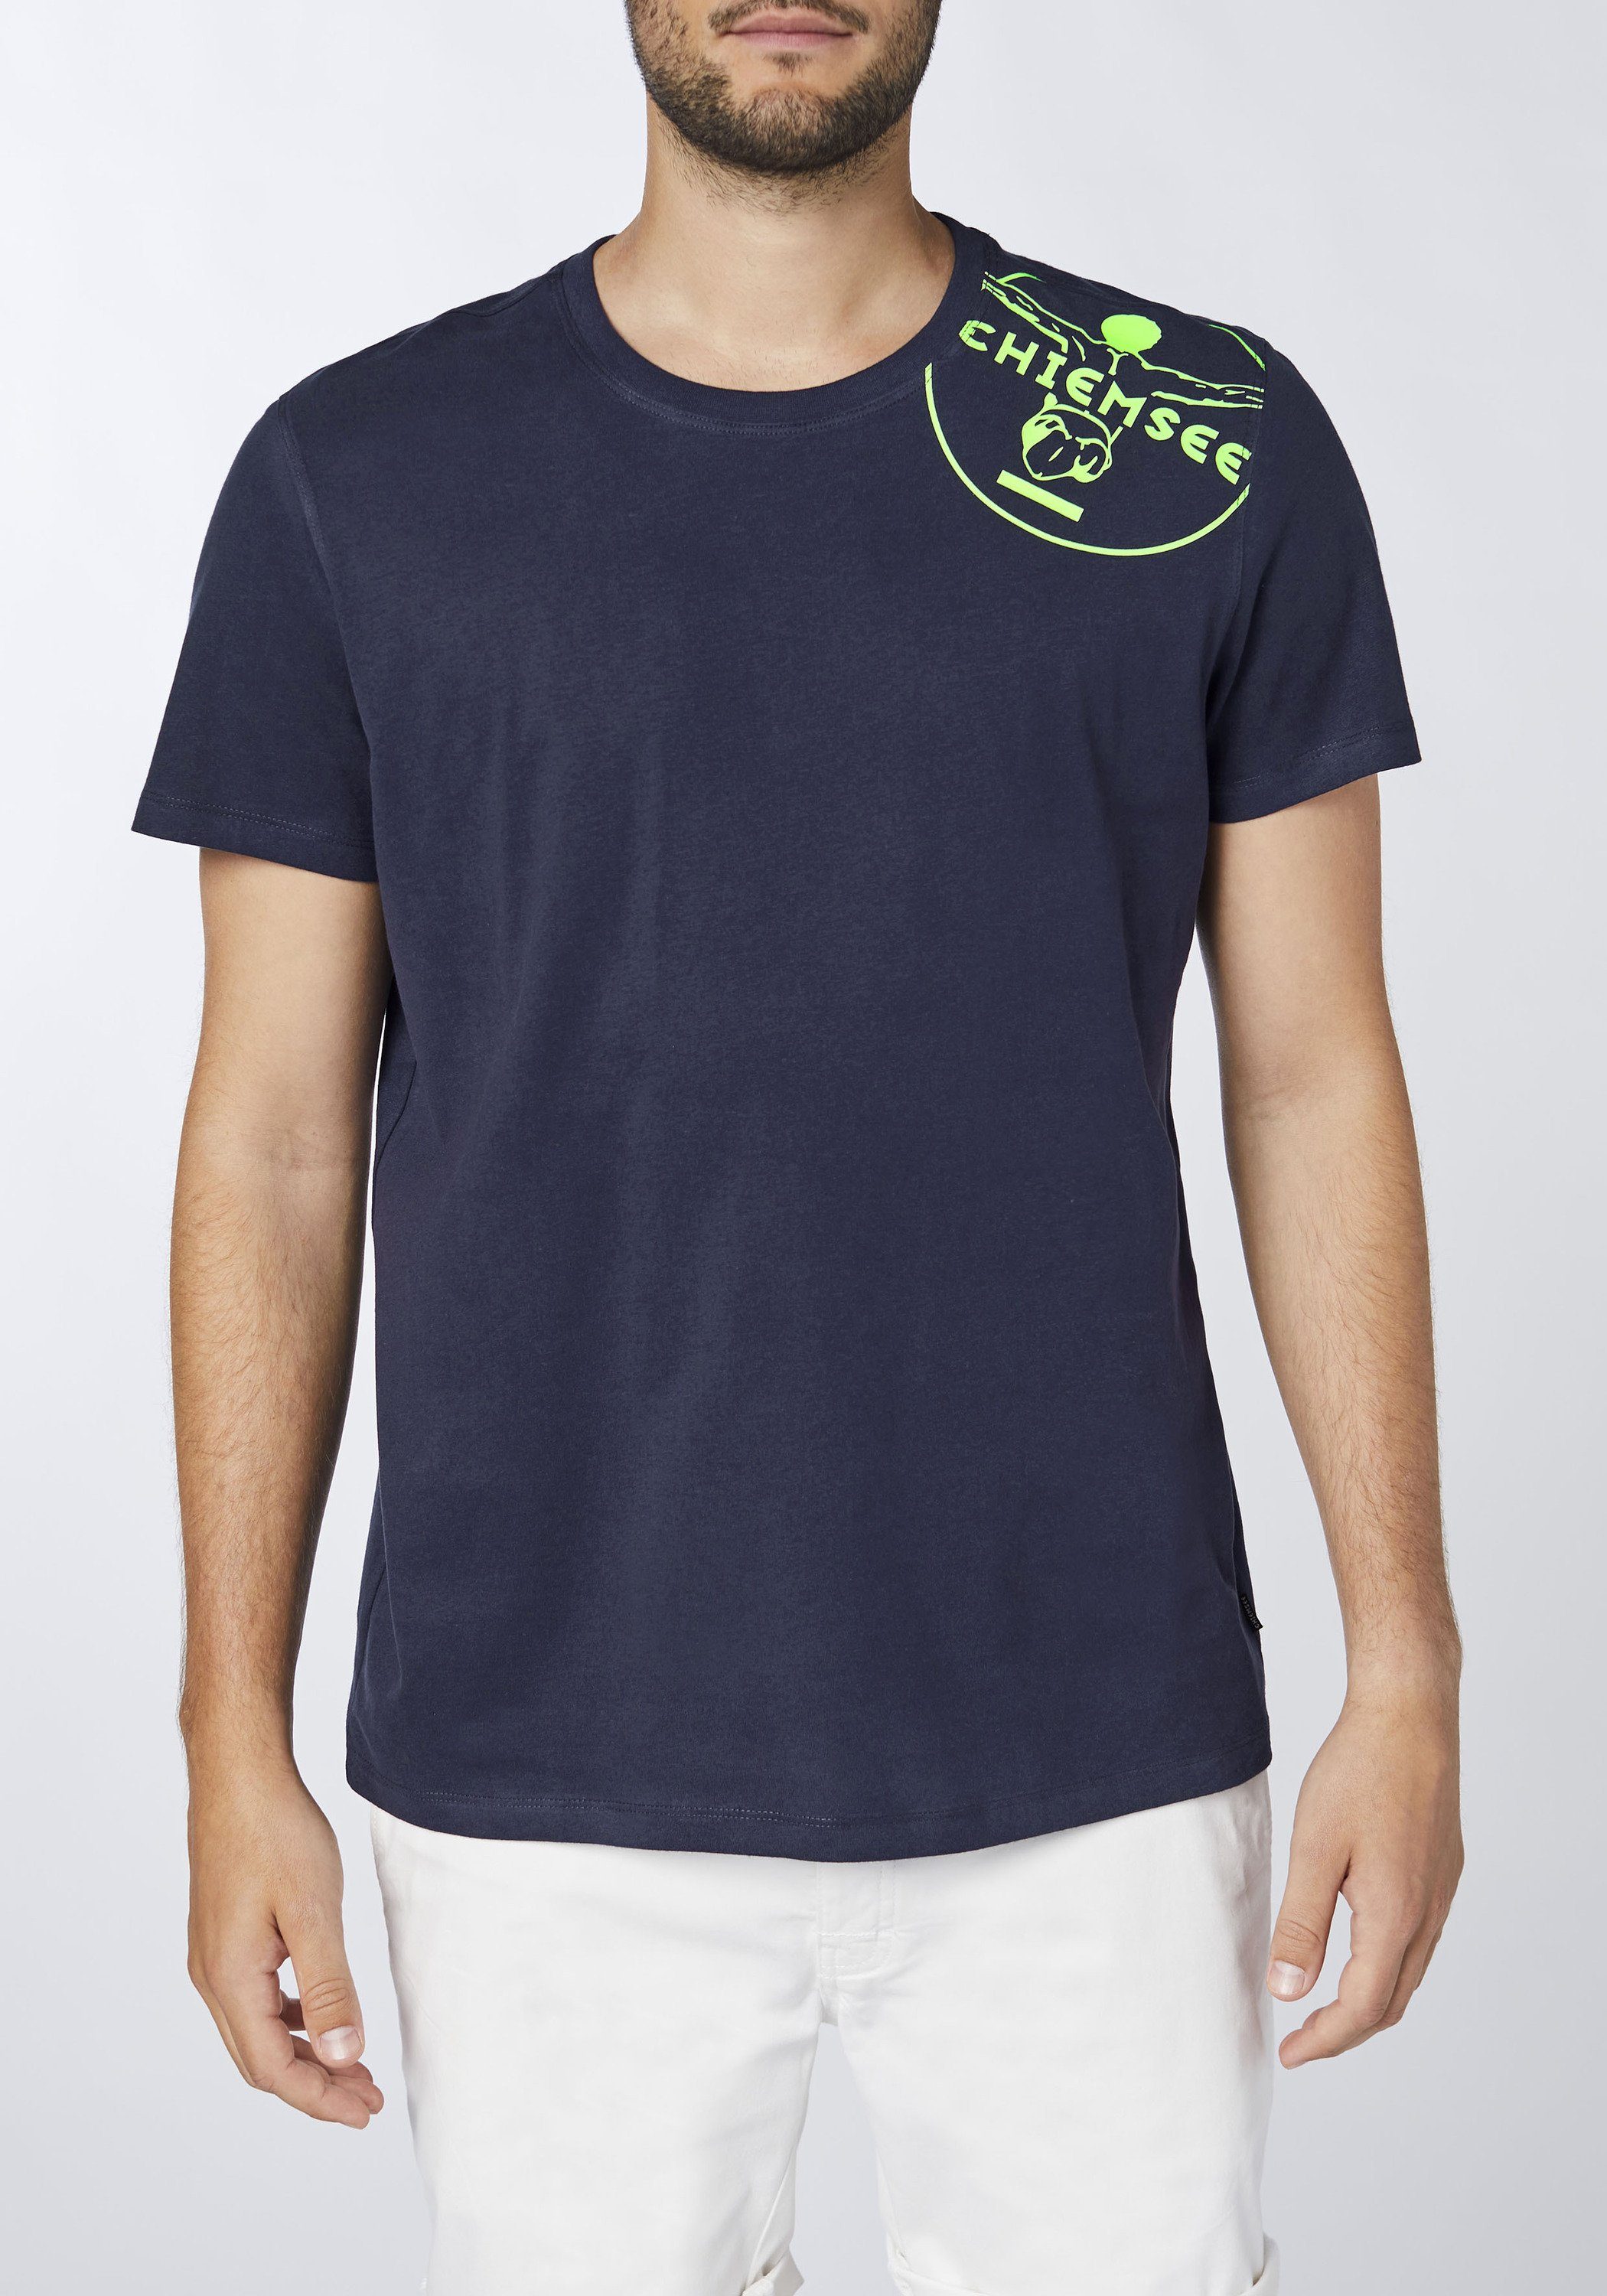 Chiemsee Print-Shirt Sky Night 1 T-Shirt Jumper-Motiv mit